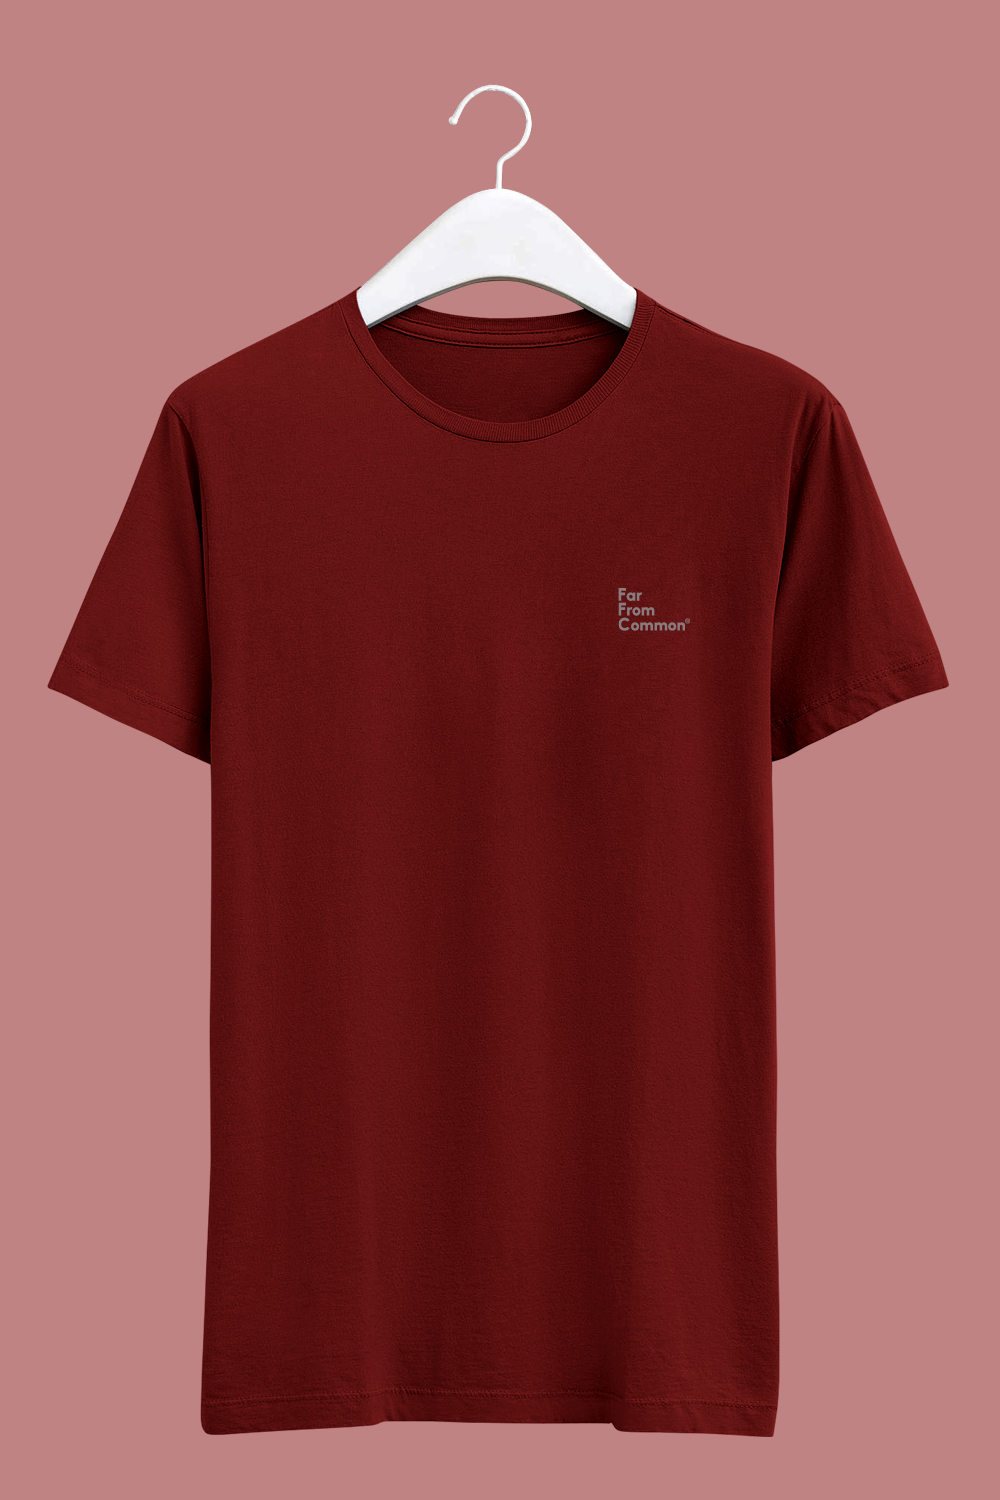 Unisex Basics T-shirt Maroon